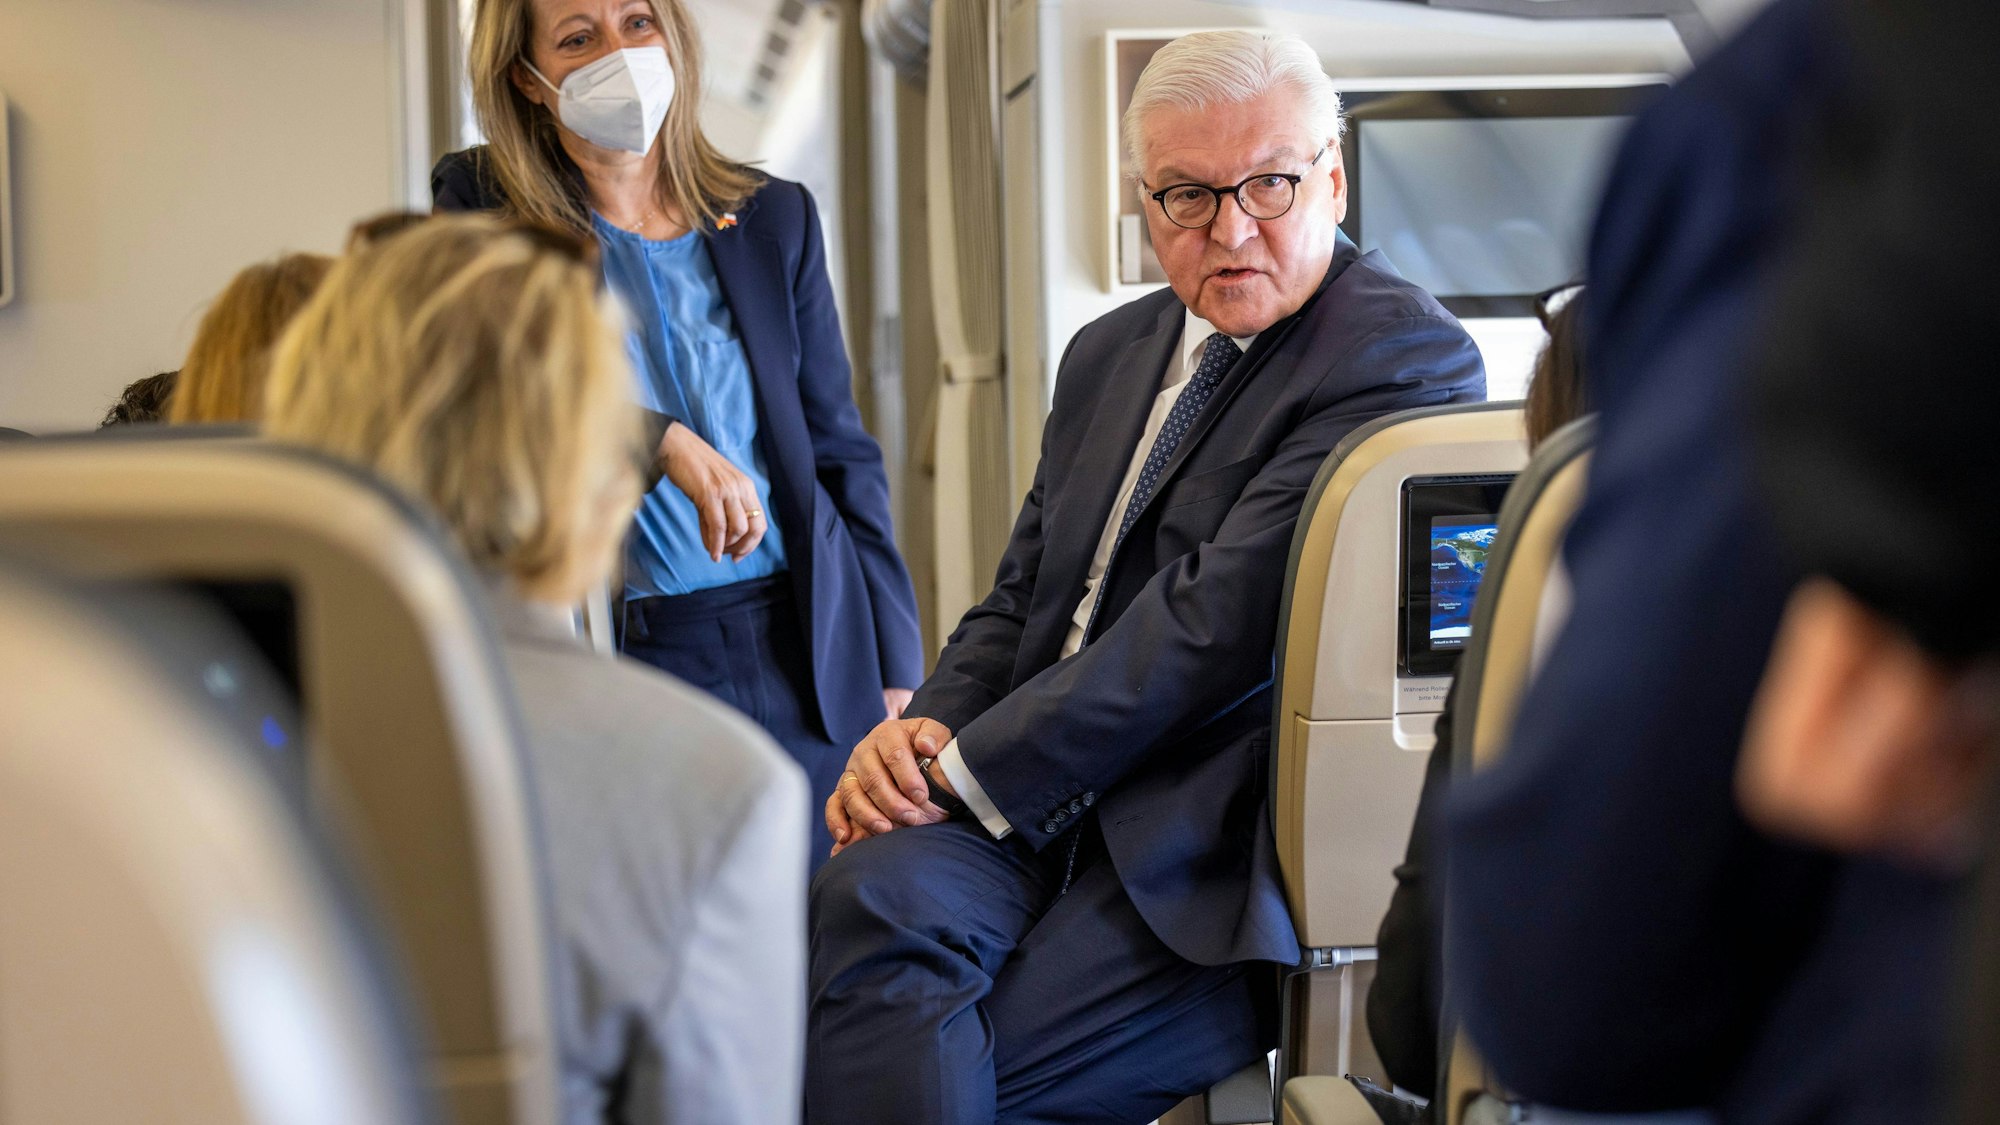 Bundespräsident Frank-Walter Steinmeier (M)spricht im Flugzeug bei der eintägigen Reise nach Polen mit mitreisenden Journalisten. Das Foto wurde am12. April 2022 aufgenommen.